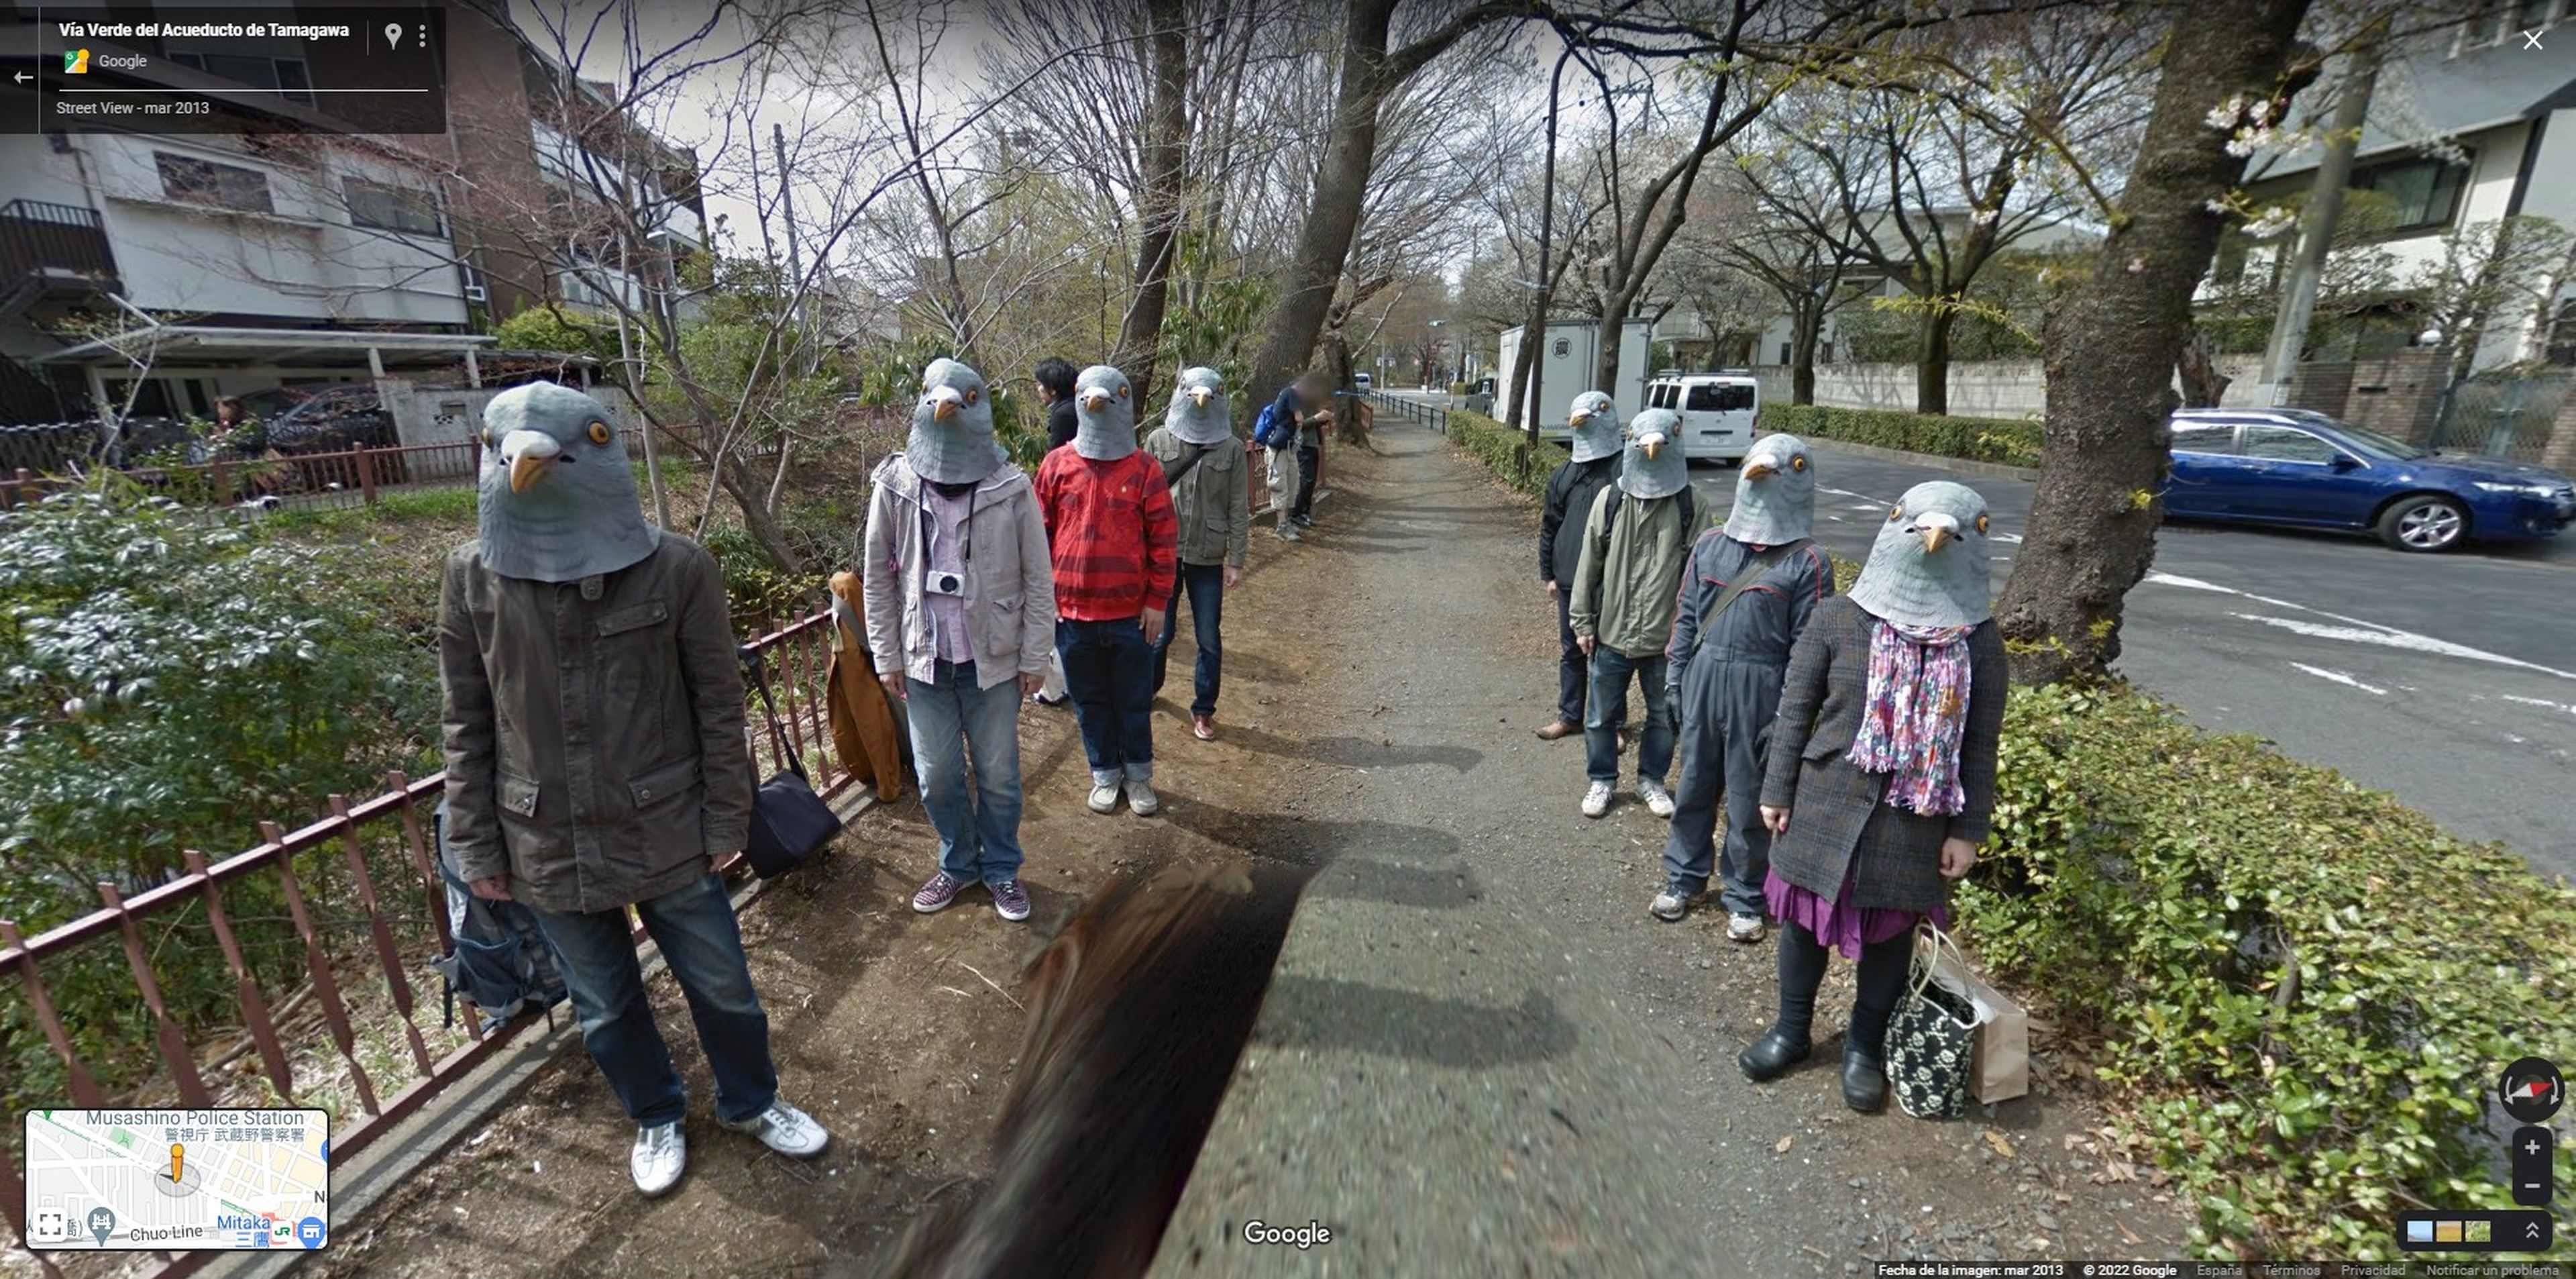 Hombres con cabeza de paloma en Google Maps.